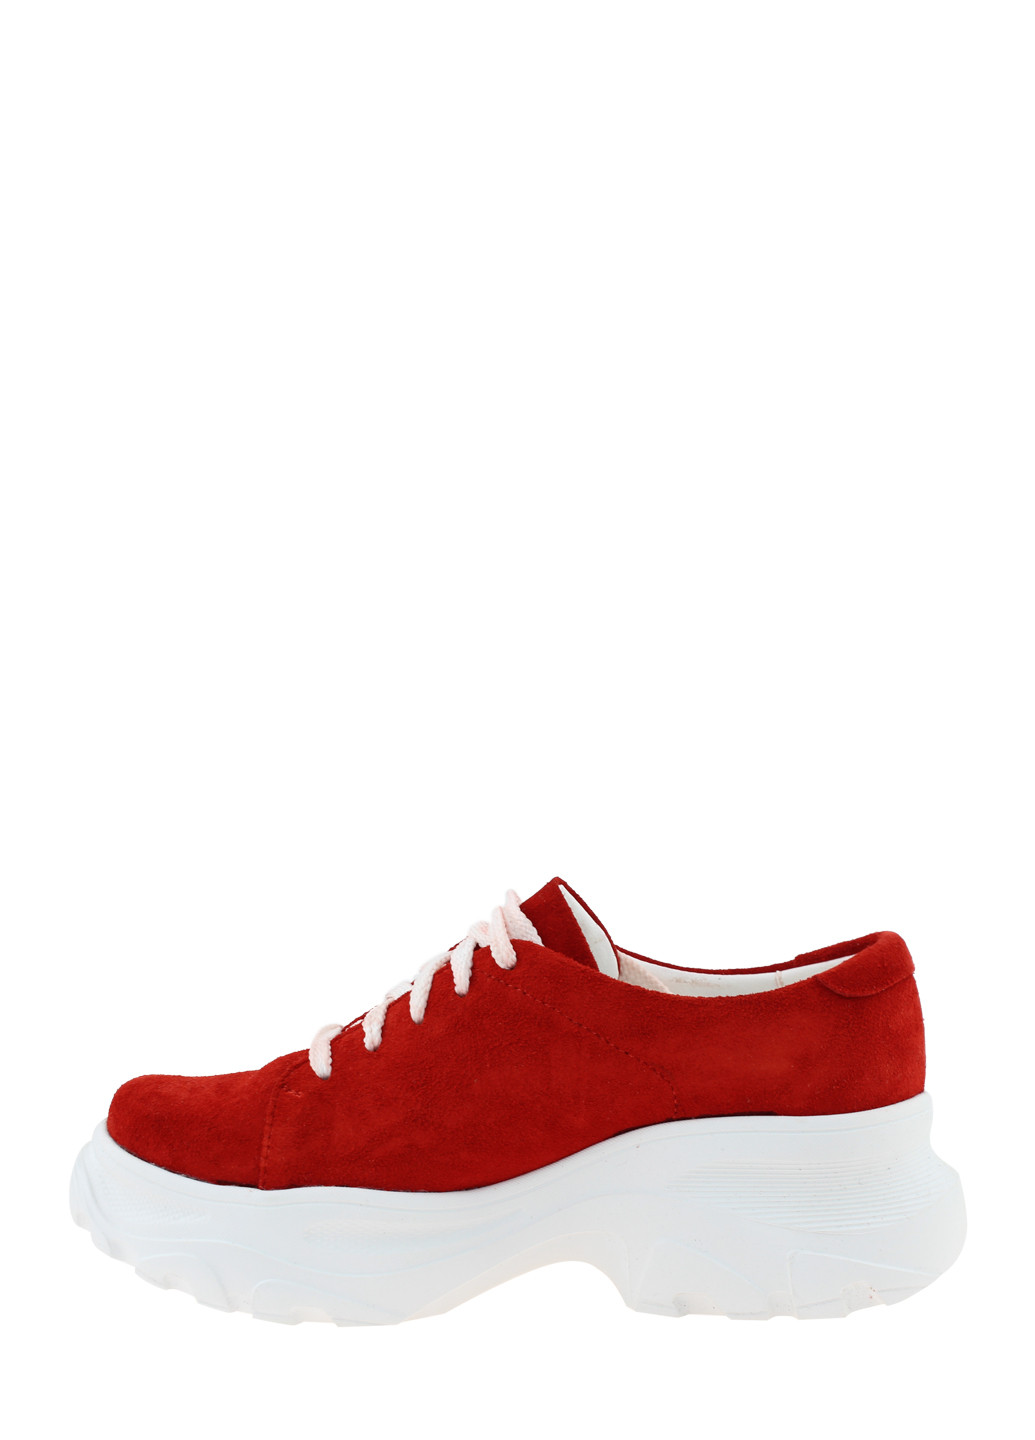 Красные демисезонные кроссовки biz20-00135 red Bizoni